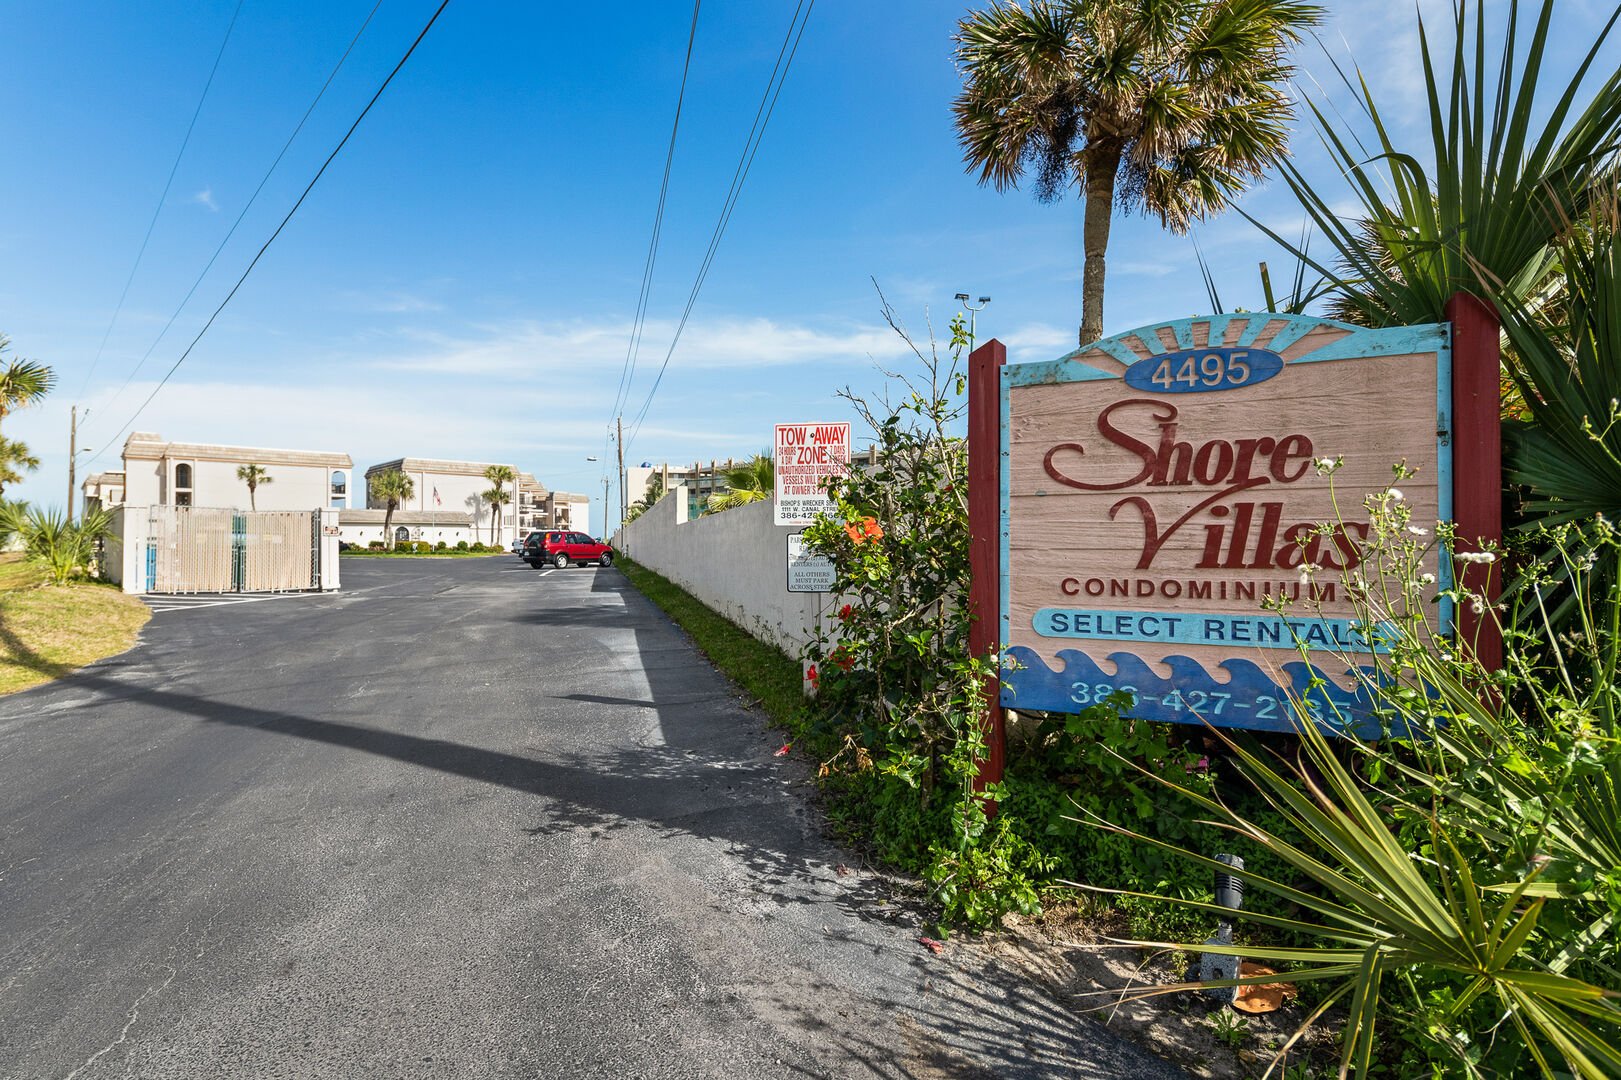 Shore Villas condominiums sign